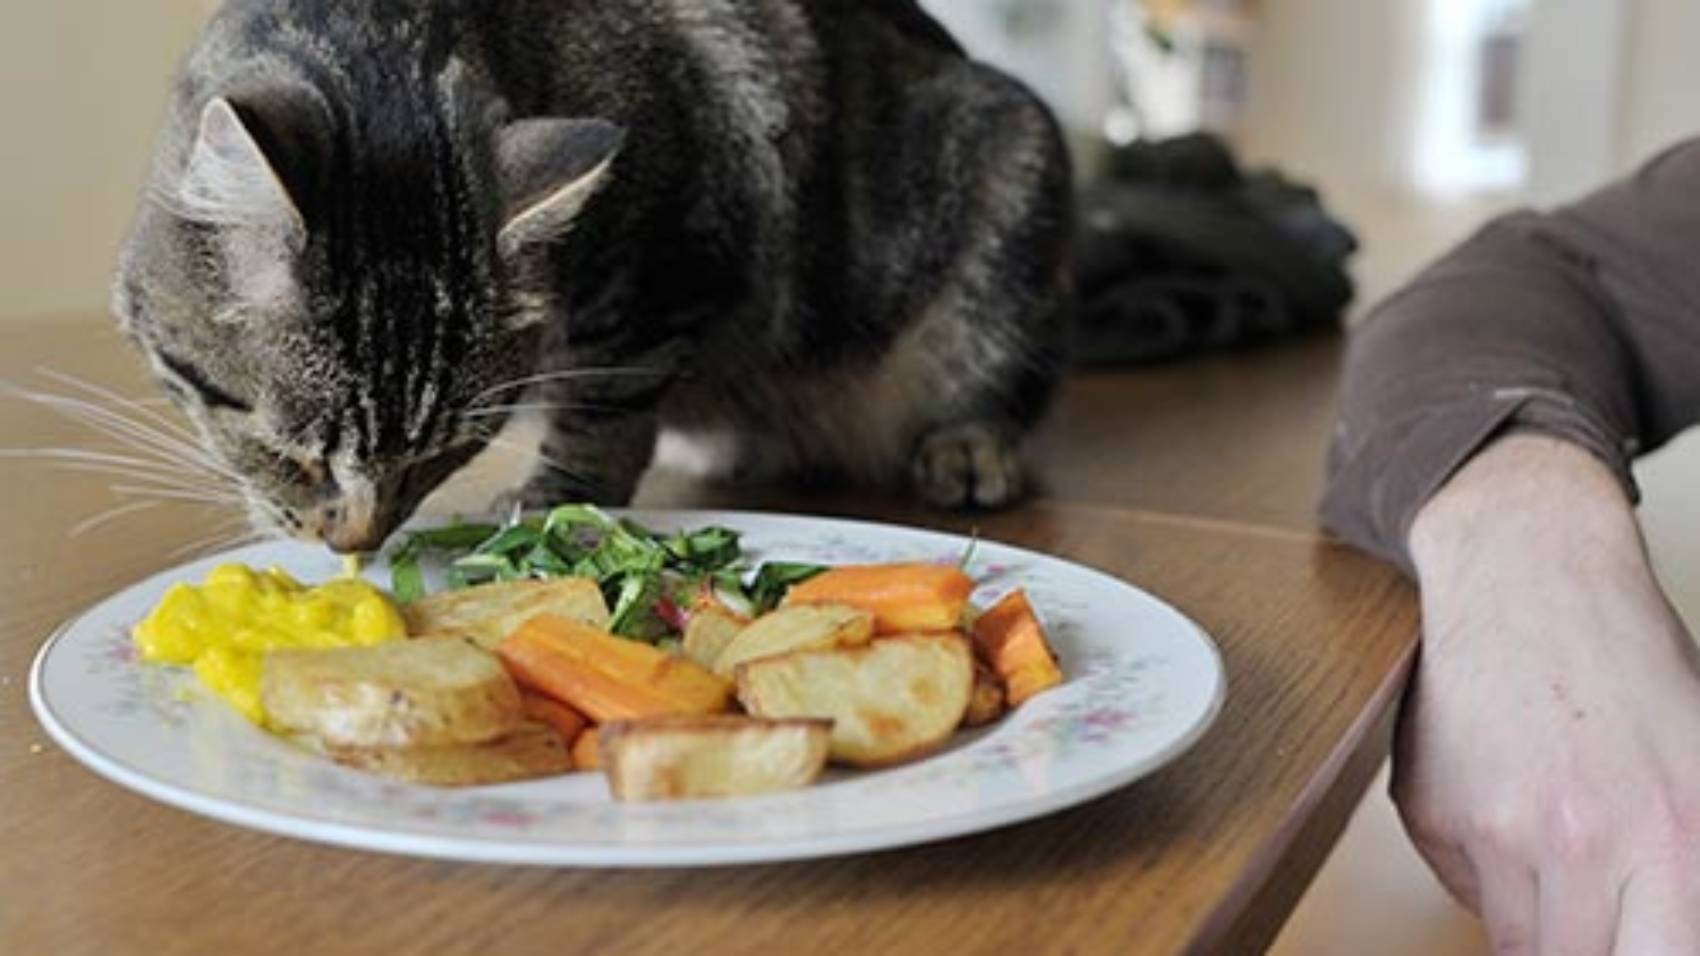 Чем кормить кошку - секреты правильного питания котов